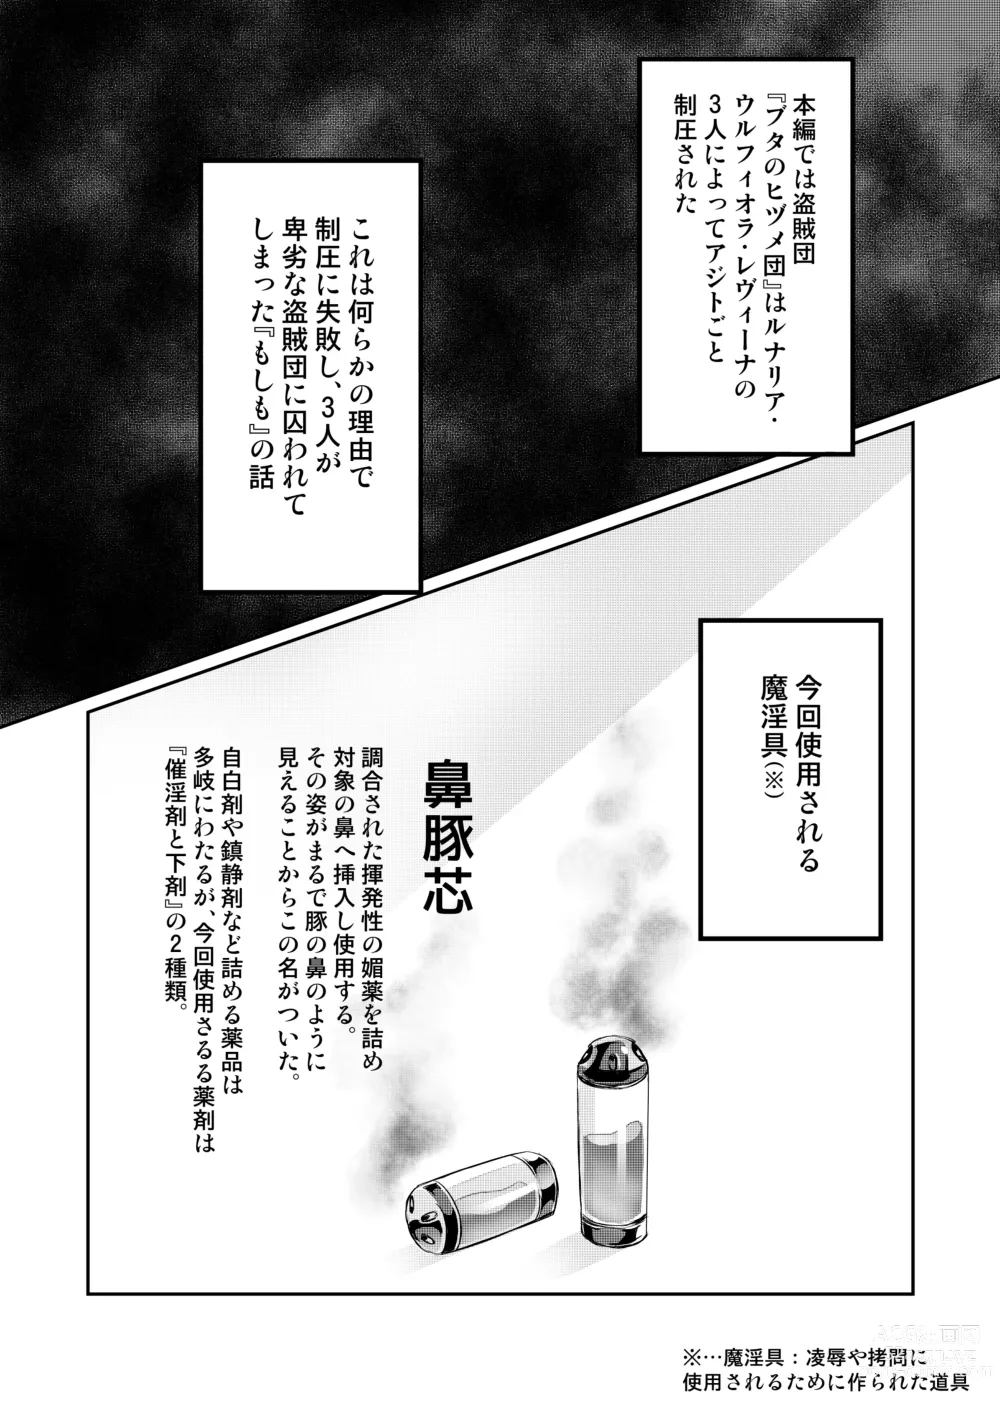 Page 2 of doujinshi Touma Senki Cecilia IF ~Toraware no Senotome Dappun no Utage to Koedame Kuro~